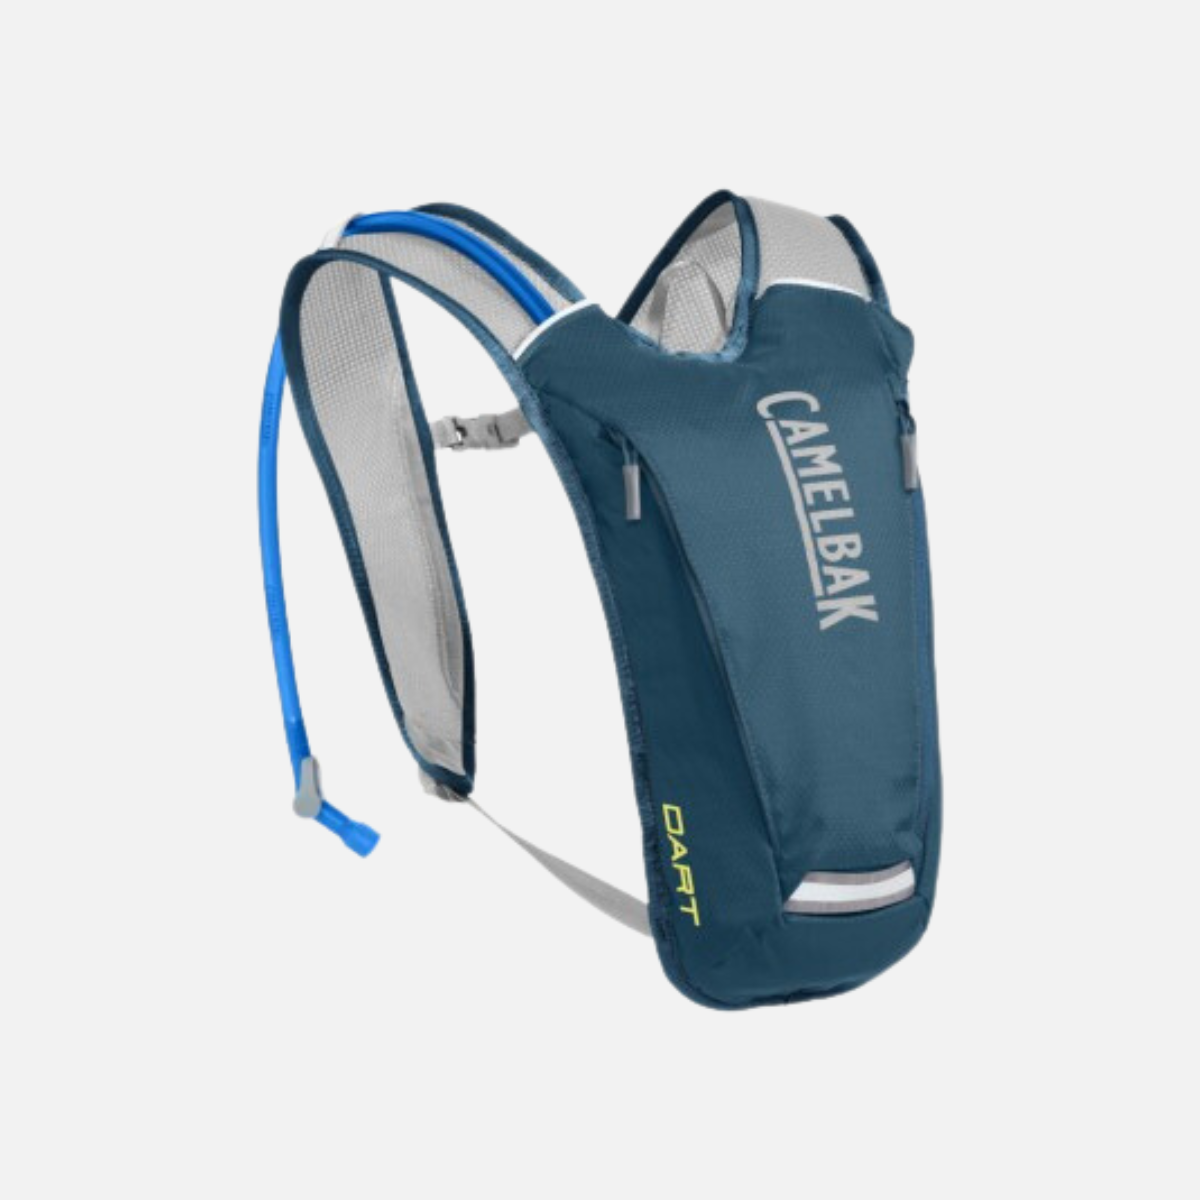 Camelbak Octane Dart 1.5L Backpack (Corsair Teal/Sulphur Spring)